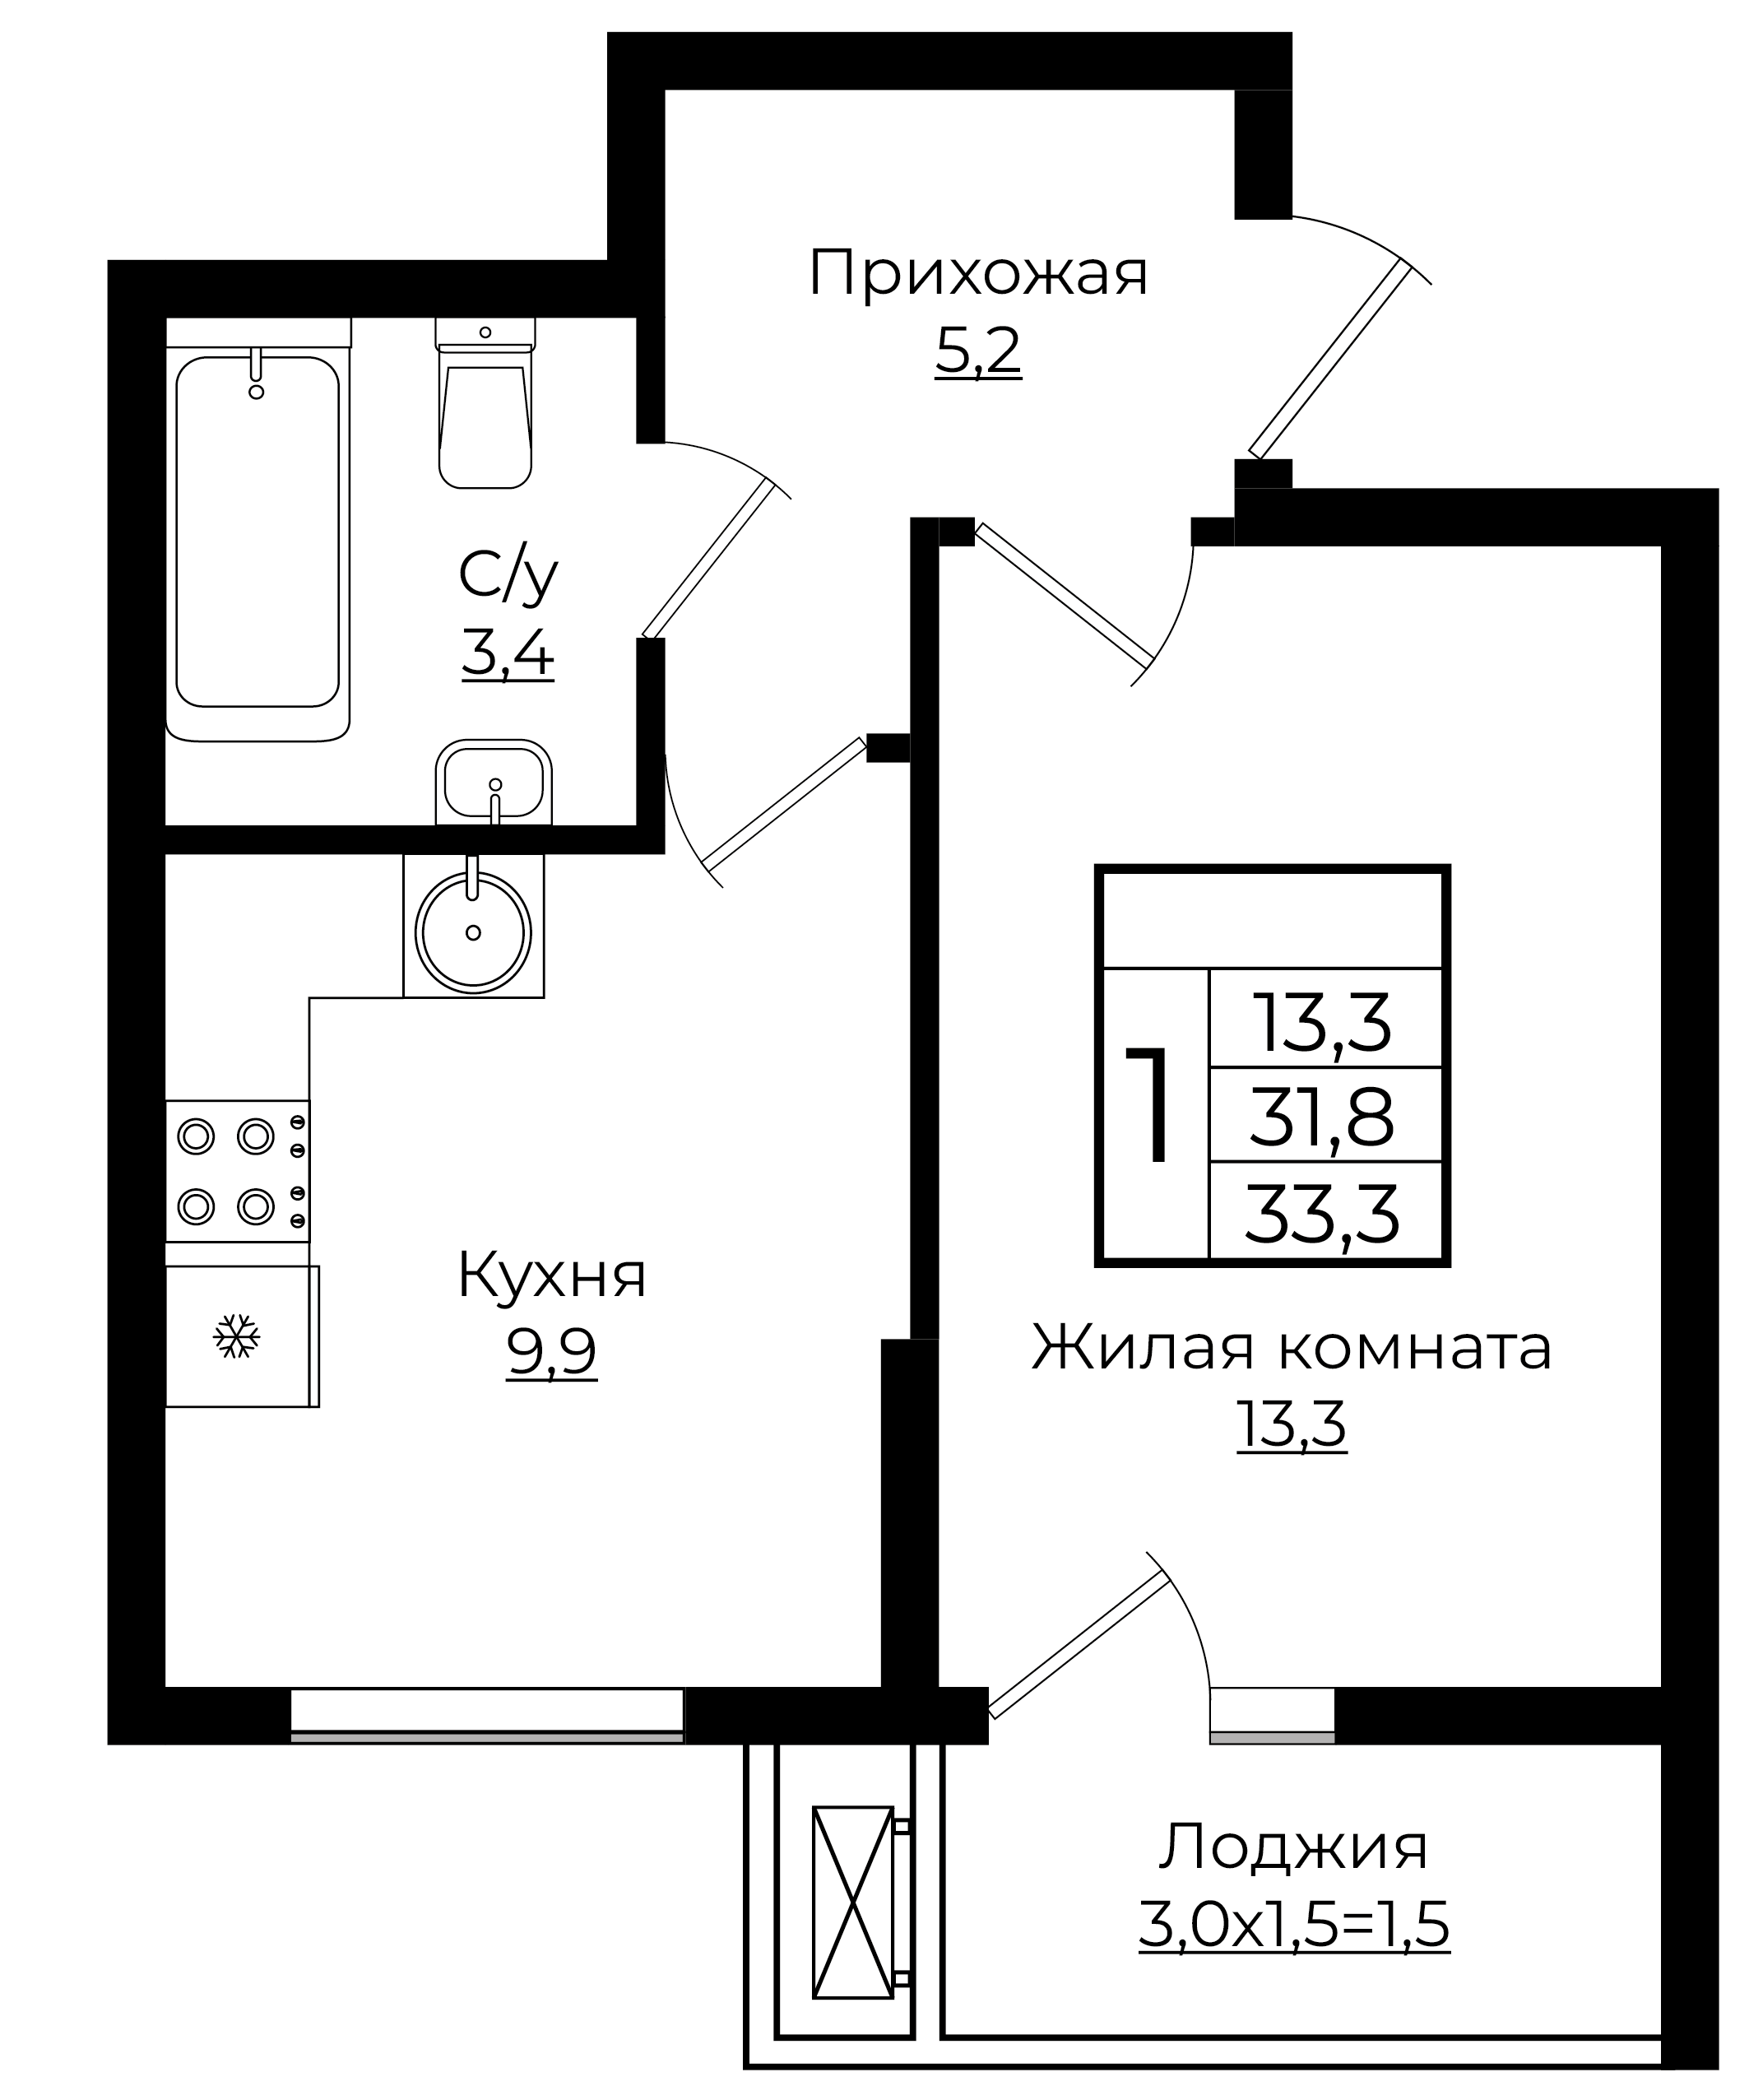 1-комнатная 33.3 м2